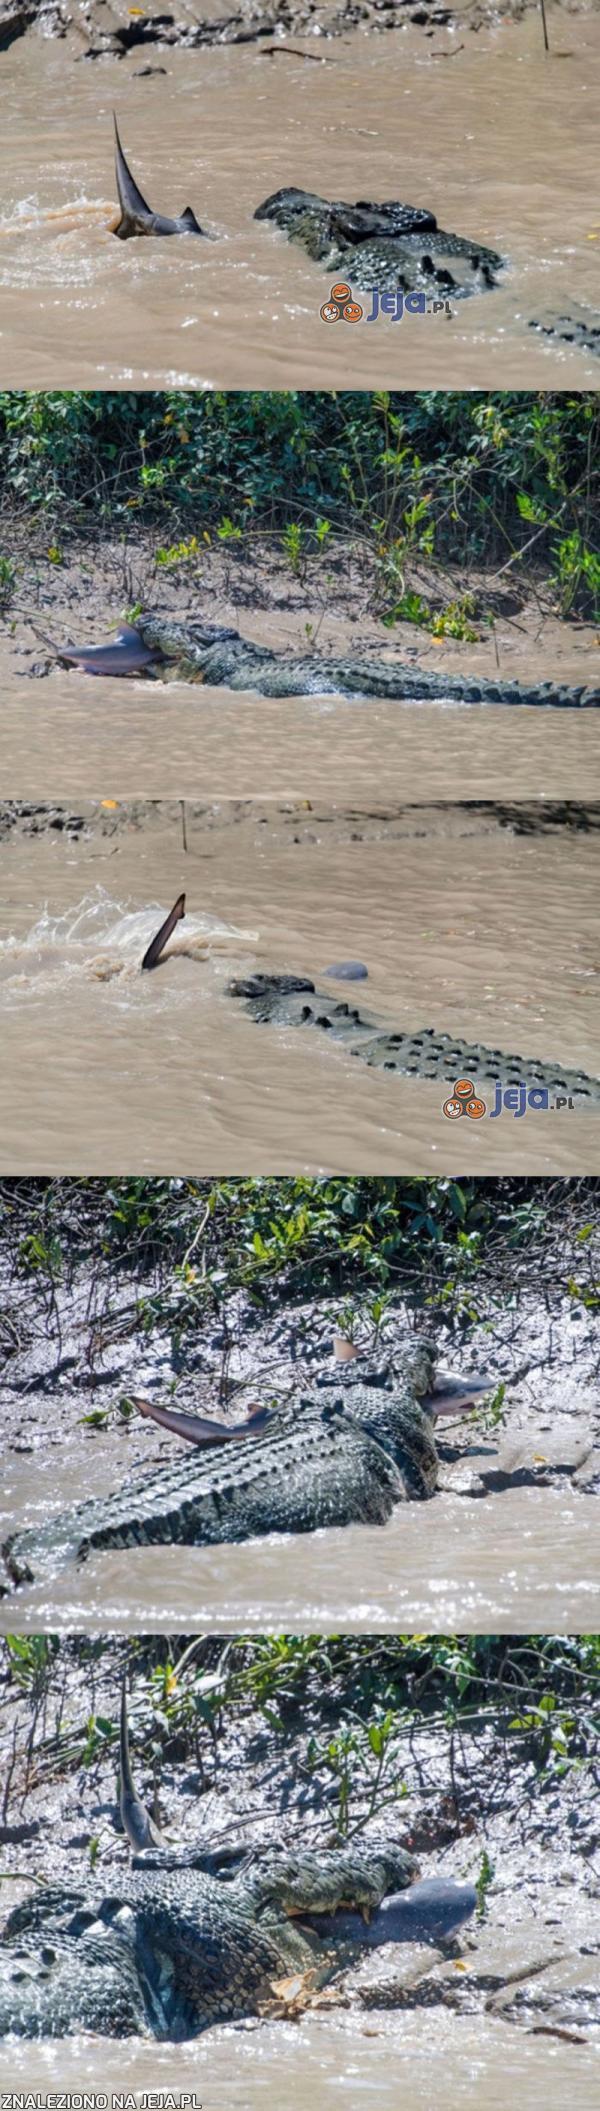 Pojedynek pomiędzy krokodylem a rekinem